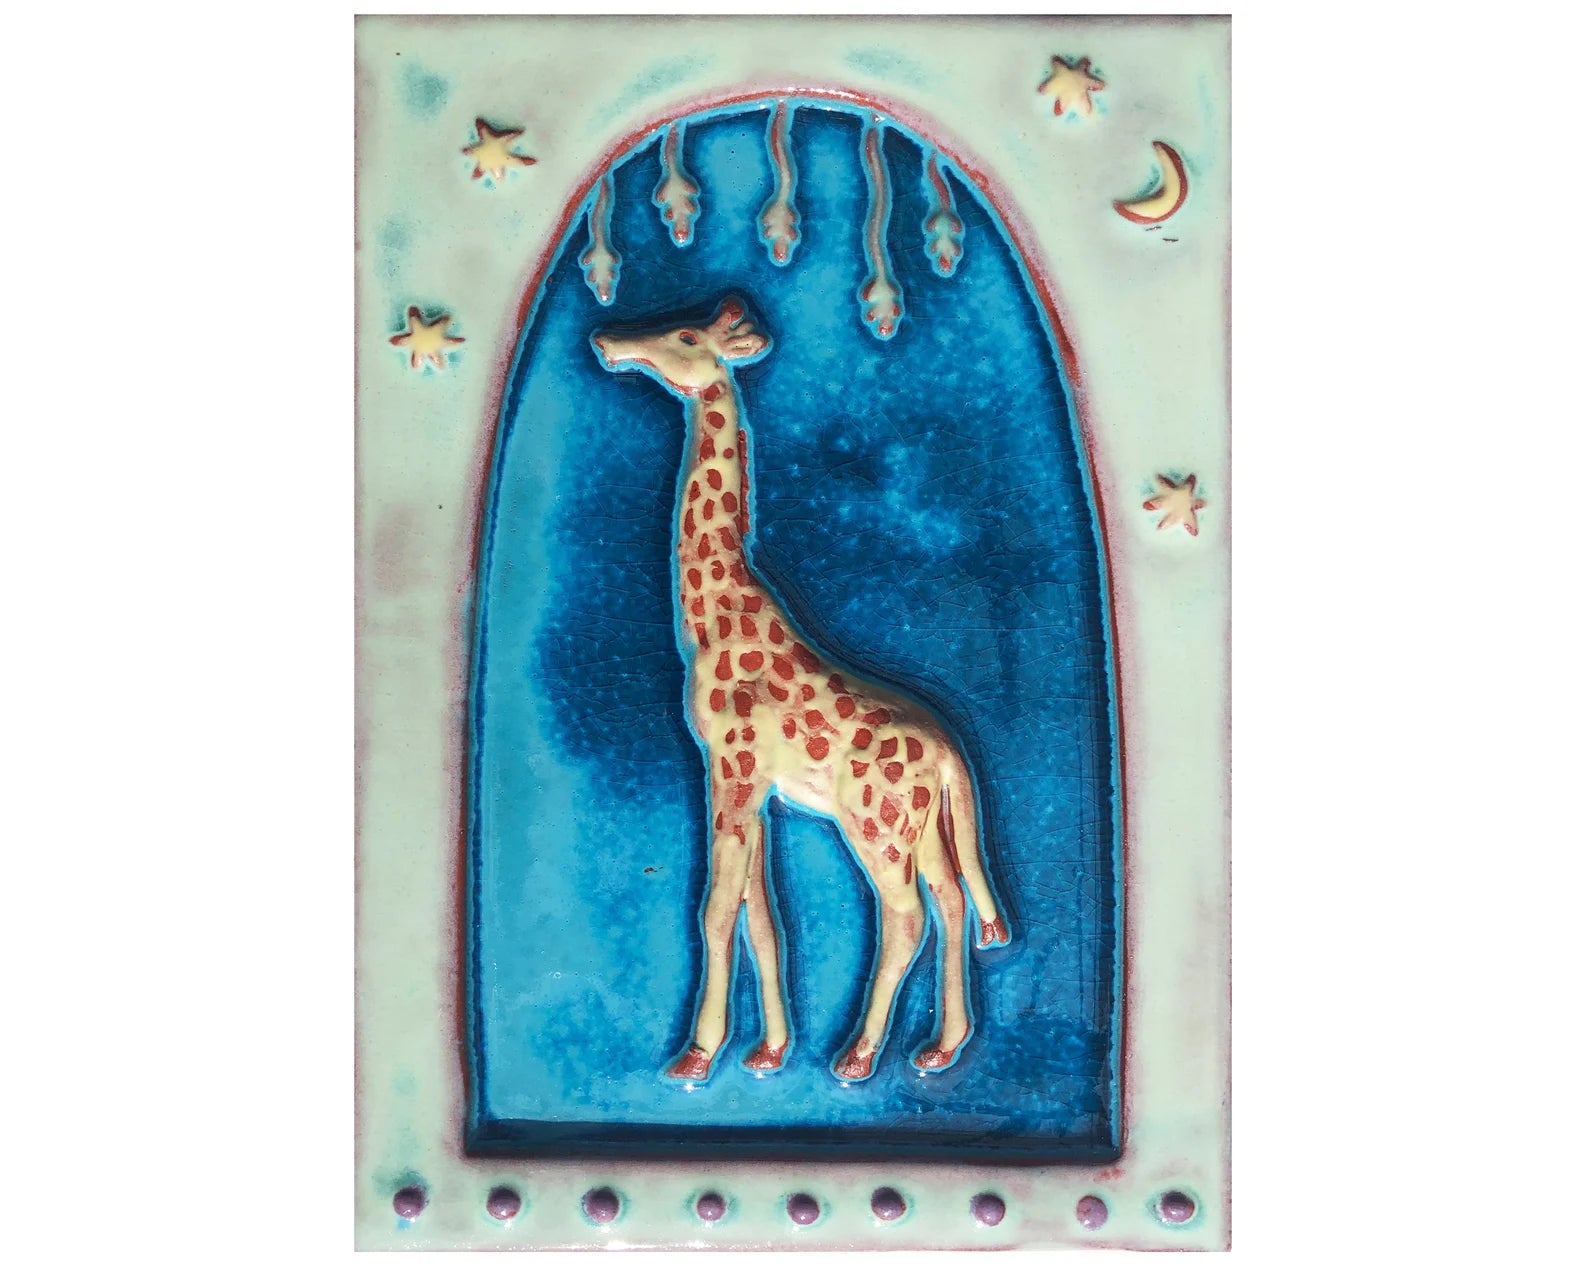 handmade giraffe ceramic tile